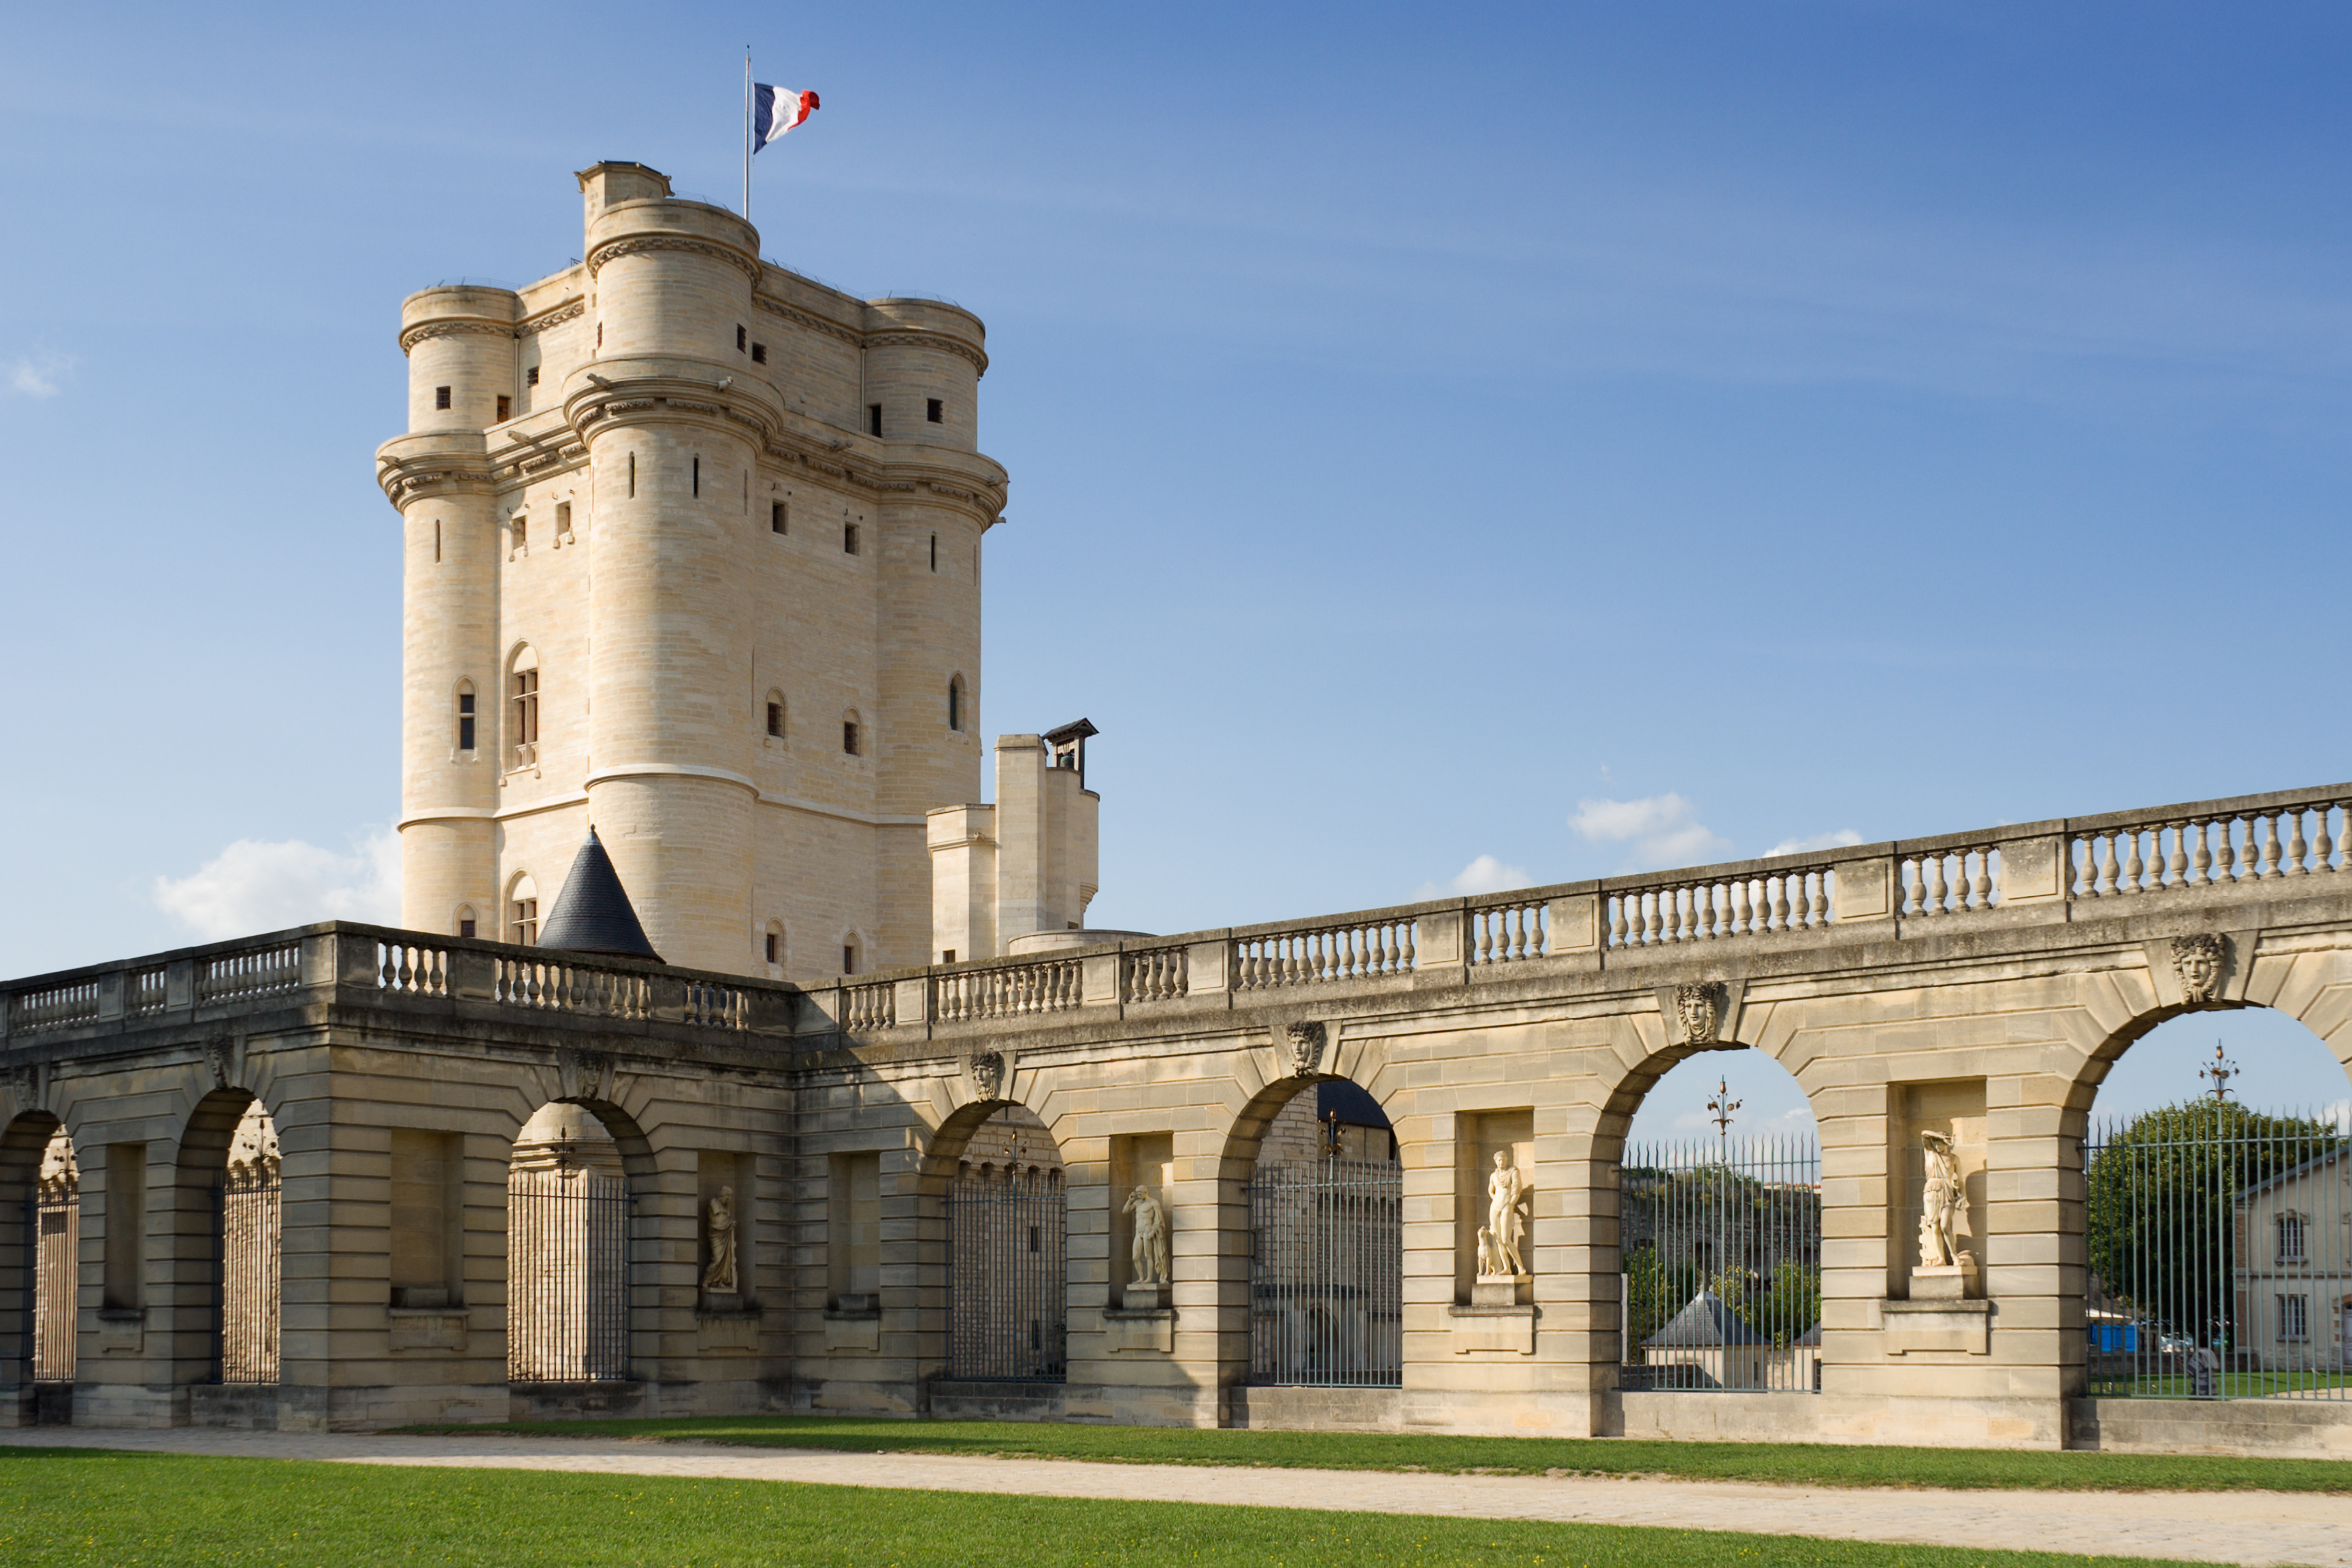 Chateau Vincennes